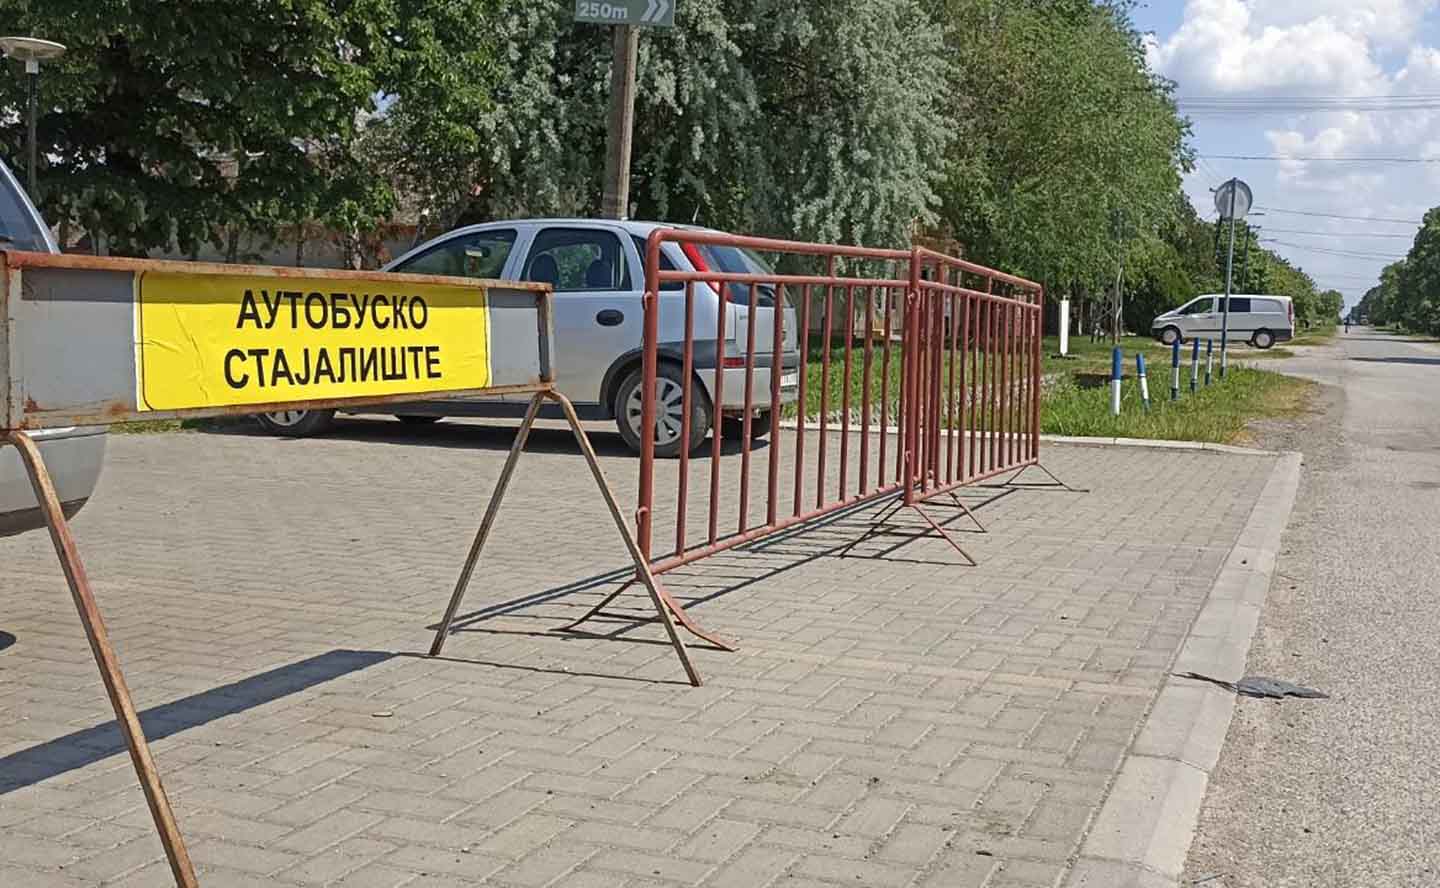 Autobuski prevoz: Izmenjena trasa saobraćaja zbog asfaltiranja perona AS Opovo